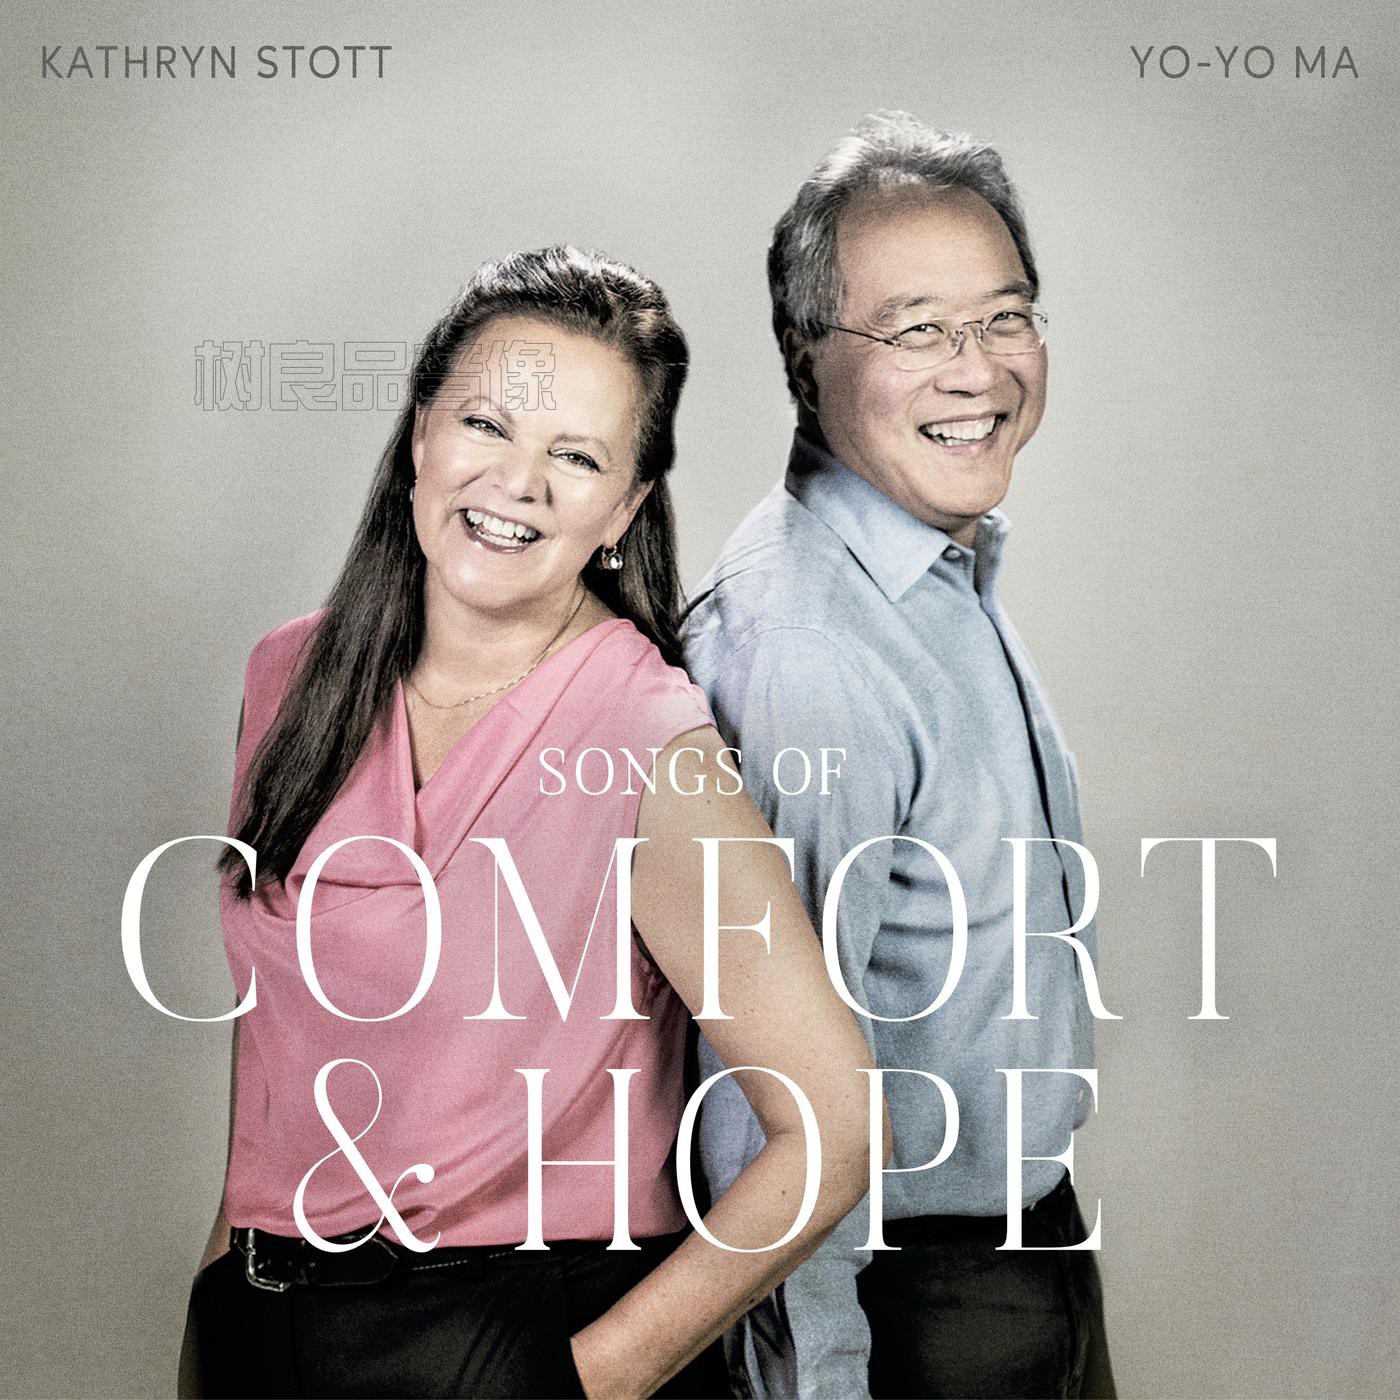 正版专辑唱片马友友yoyoma凯瑟琳·斯托特 慰藉与希望之歌 CD光碟